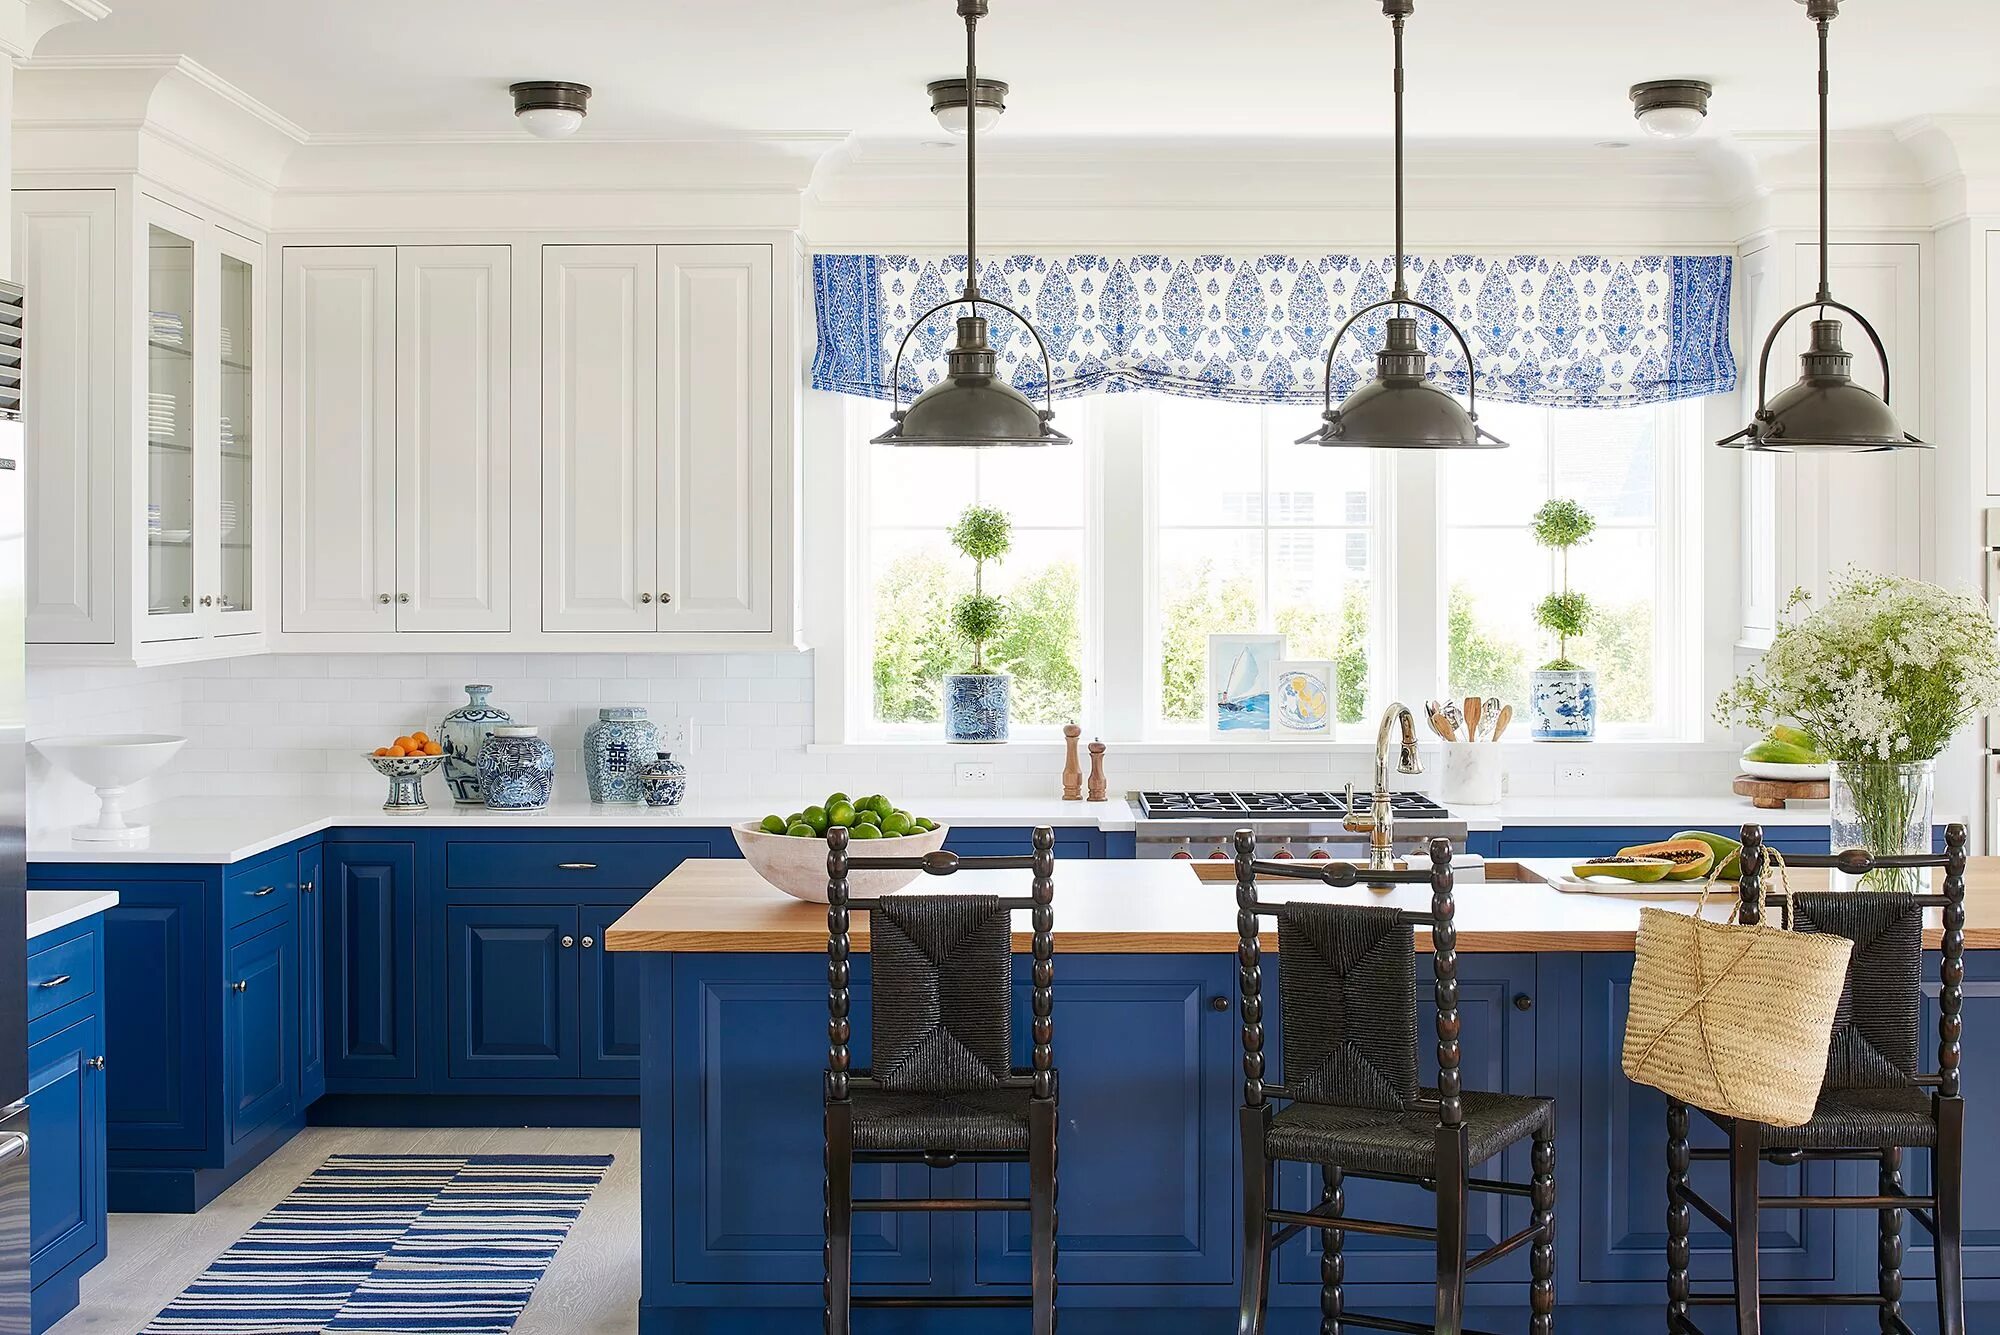 Синяя кухня. Кухня икеа Акстад синяя. Гжель в интерьере кухни в стиле Прованс. Кухня икеа голубая. Синяя кухня в стиле Прованс.